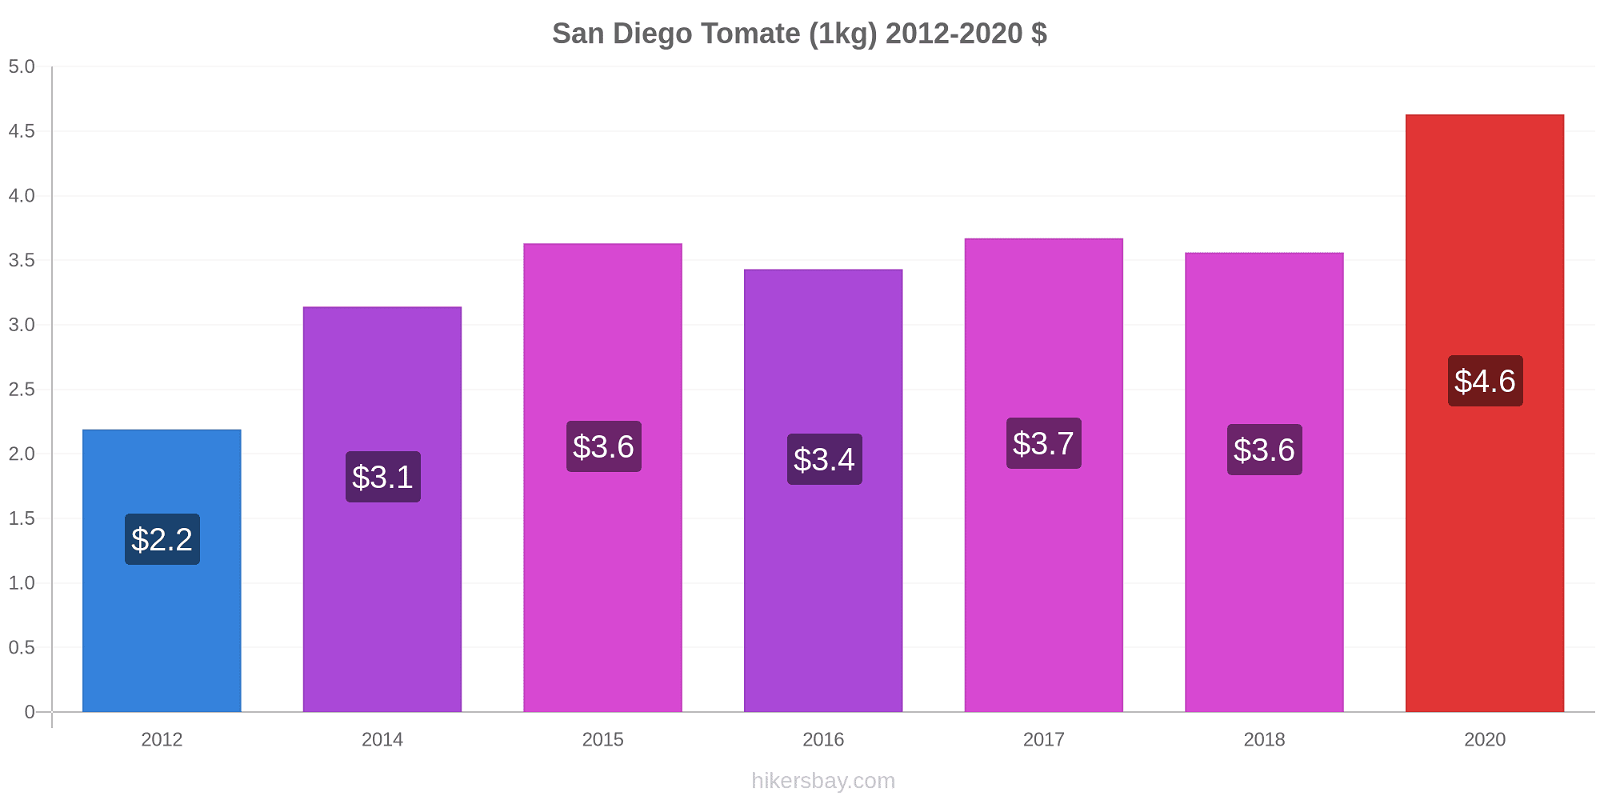 San Diego cambios de precios Tomate (1kg) hikersbay.com